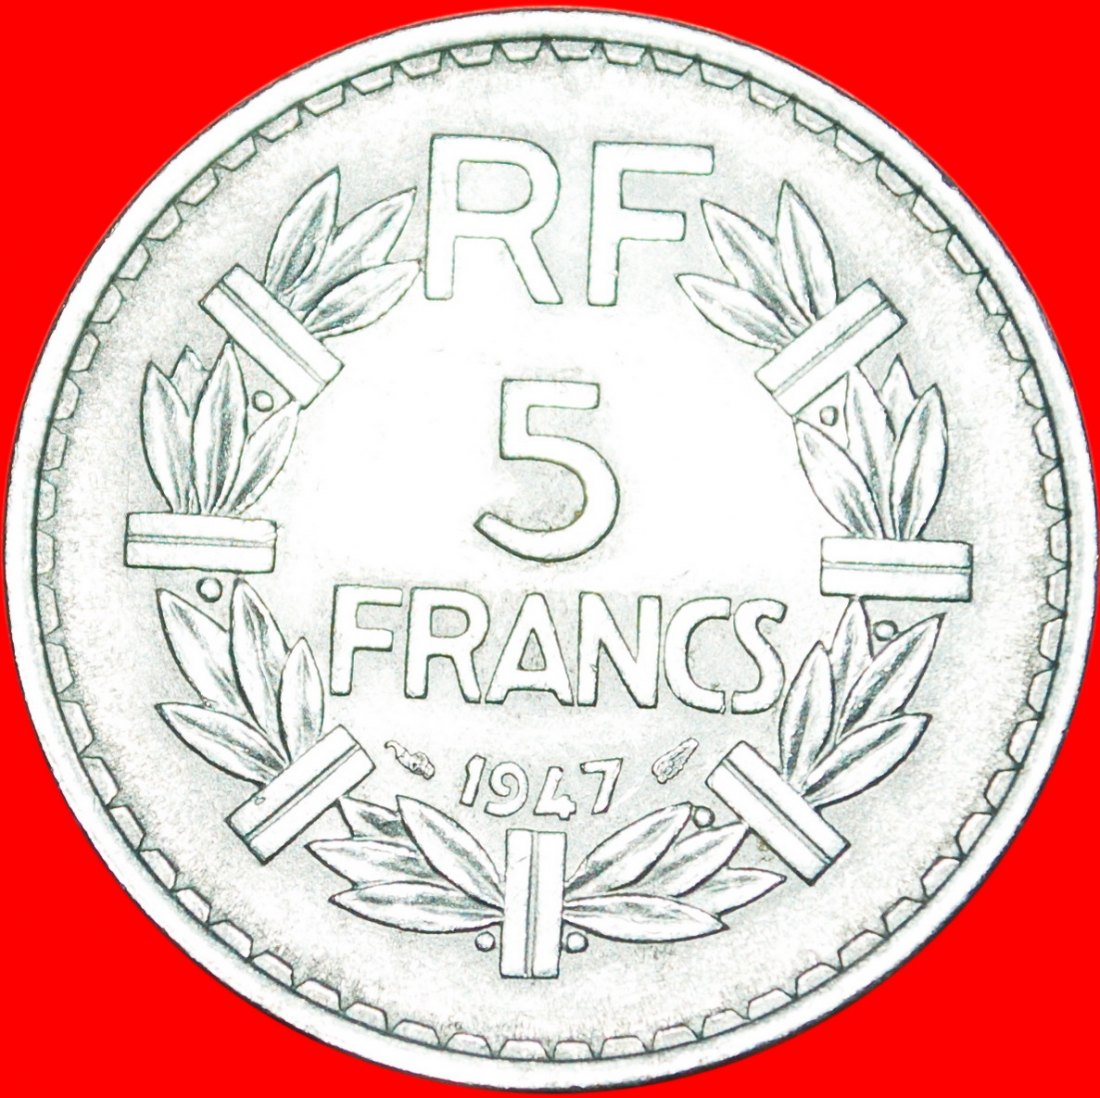  * OFFEN 9: FRANKREICH ★ 5 FRANC 1947 UNGEWÖHNLICH! ★OHNE VORBEHALT!   